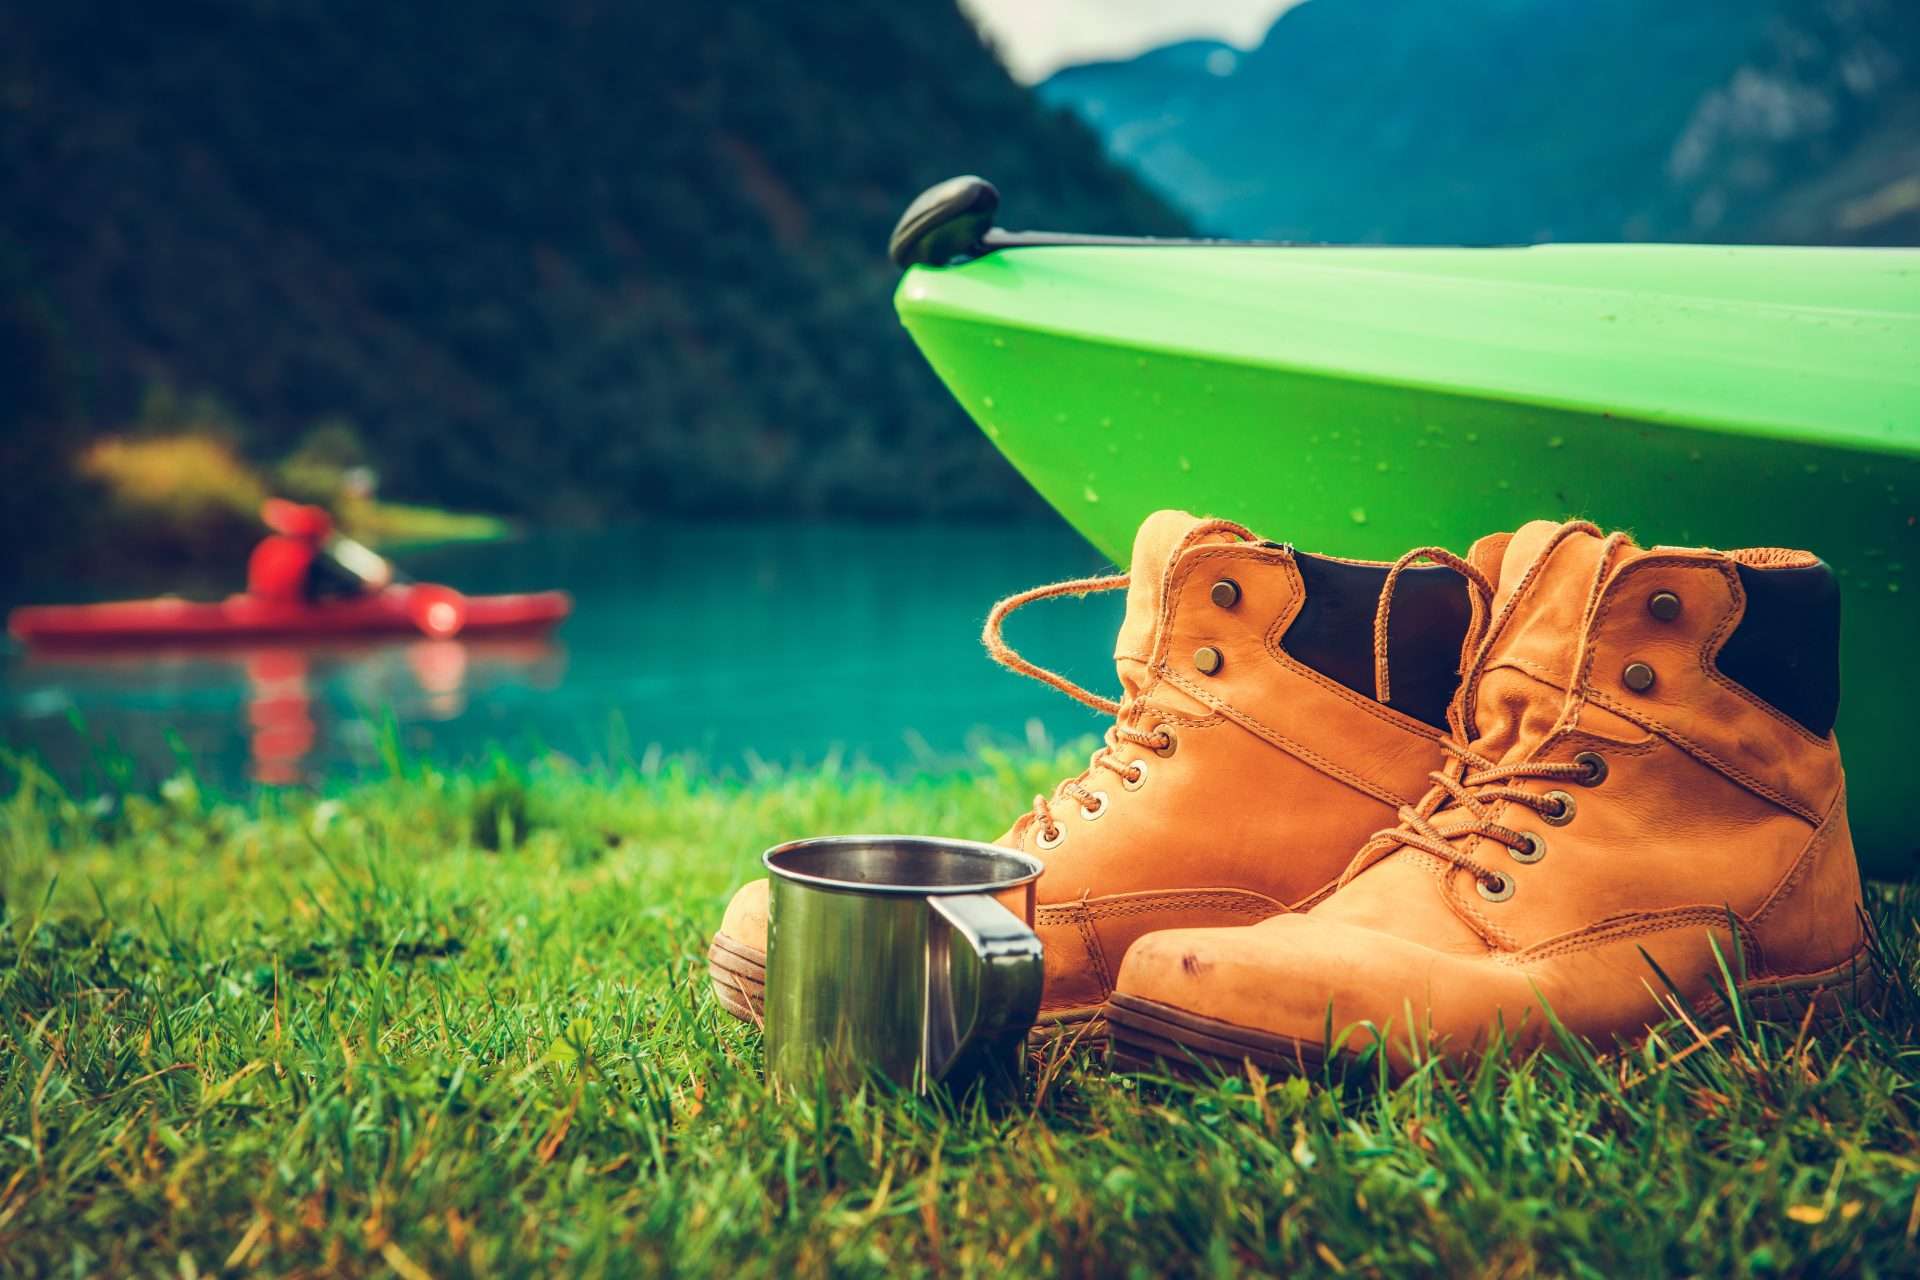 Close up of kayak along water with hiking boots and camping mug